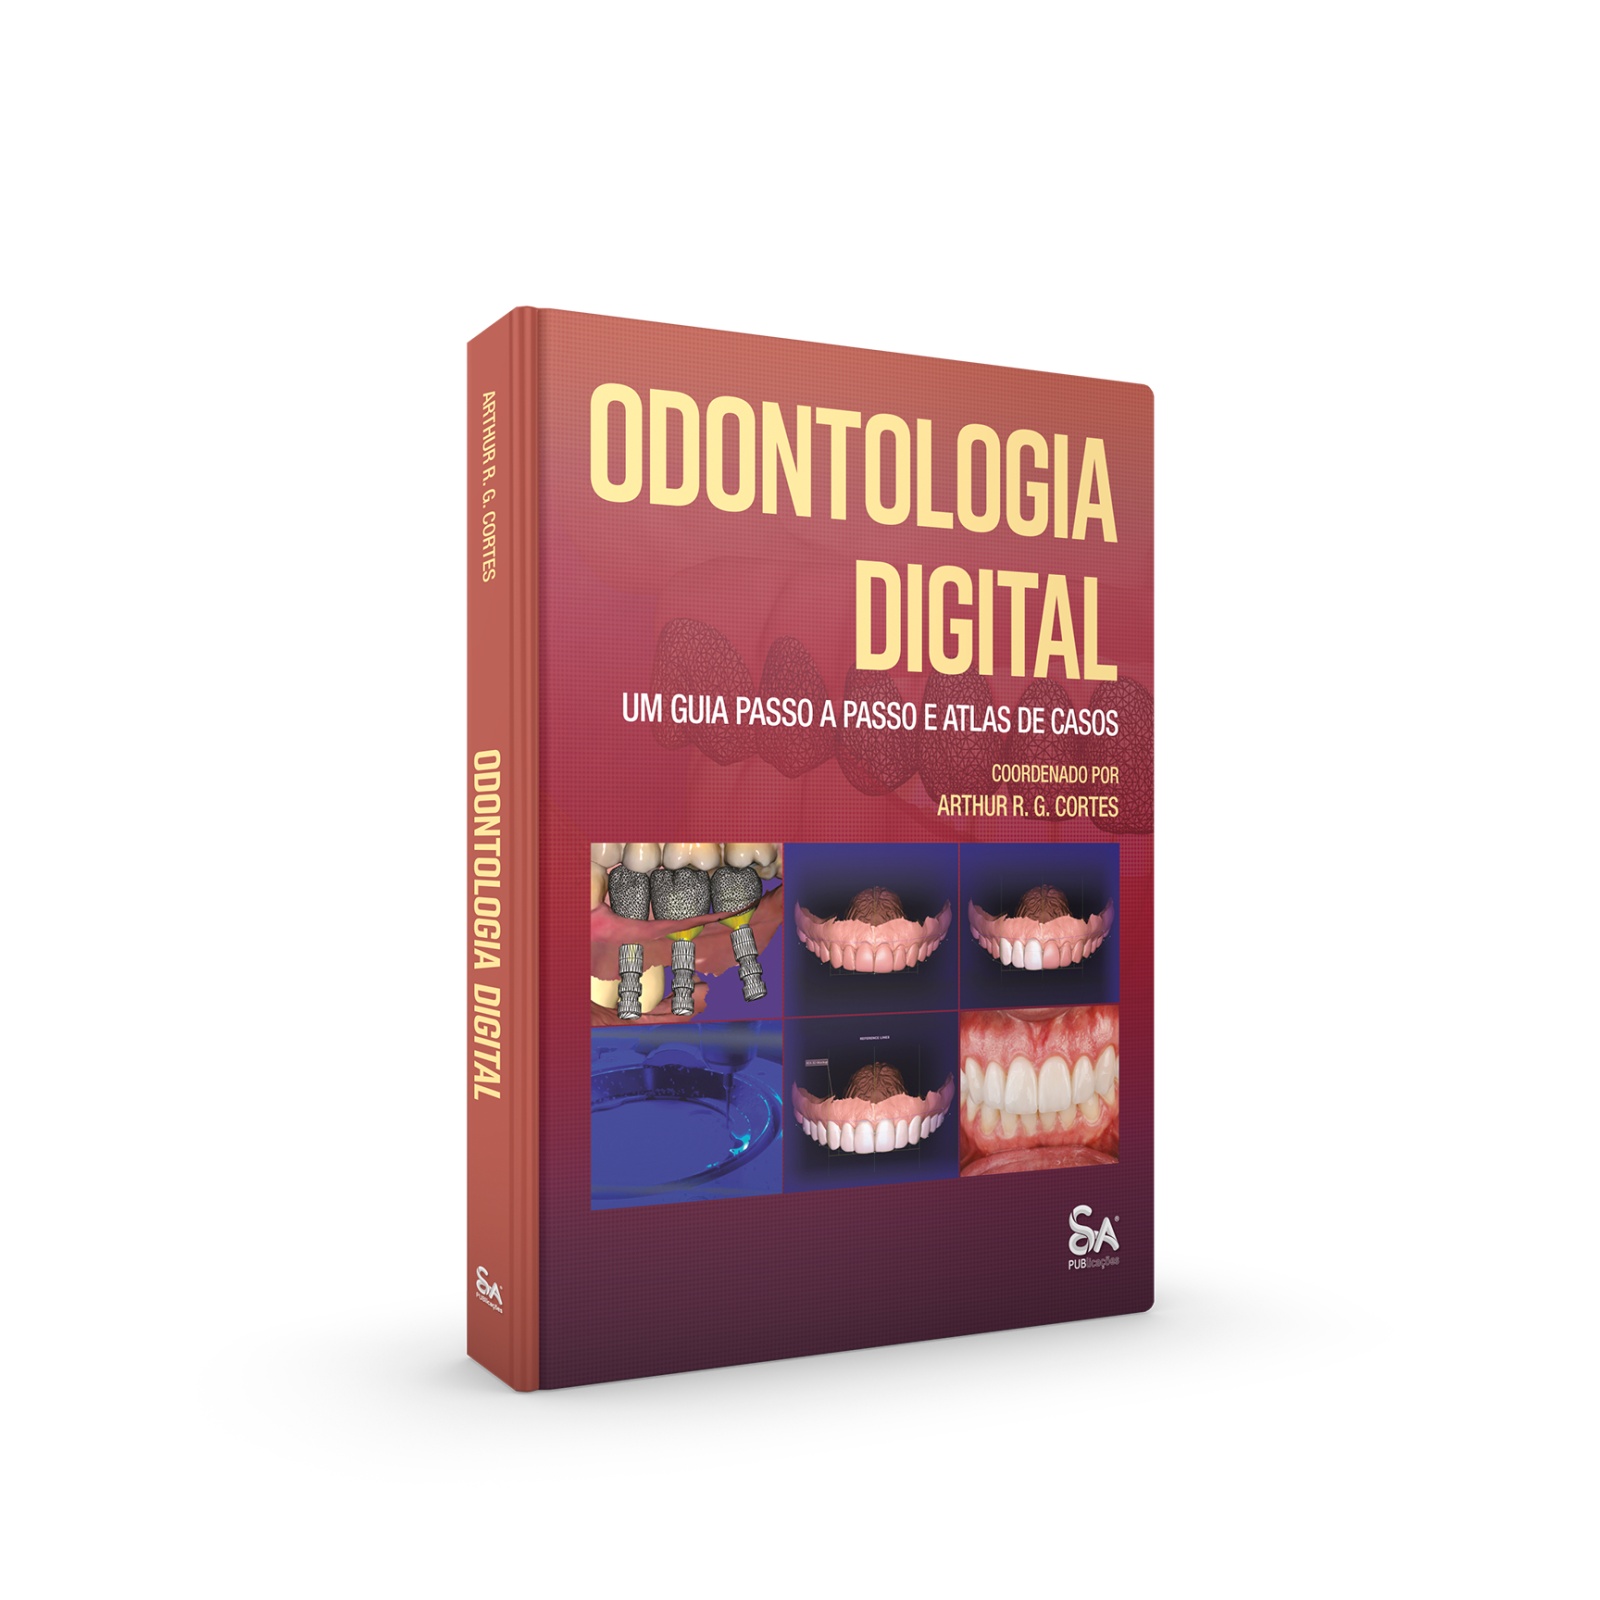 Odontologia Digital: Um Guia Passo a Passo e Atlas de Casos